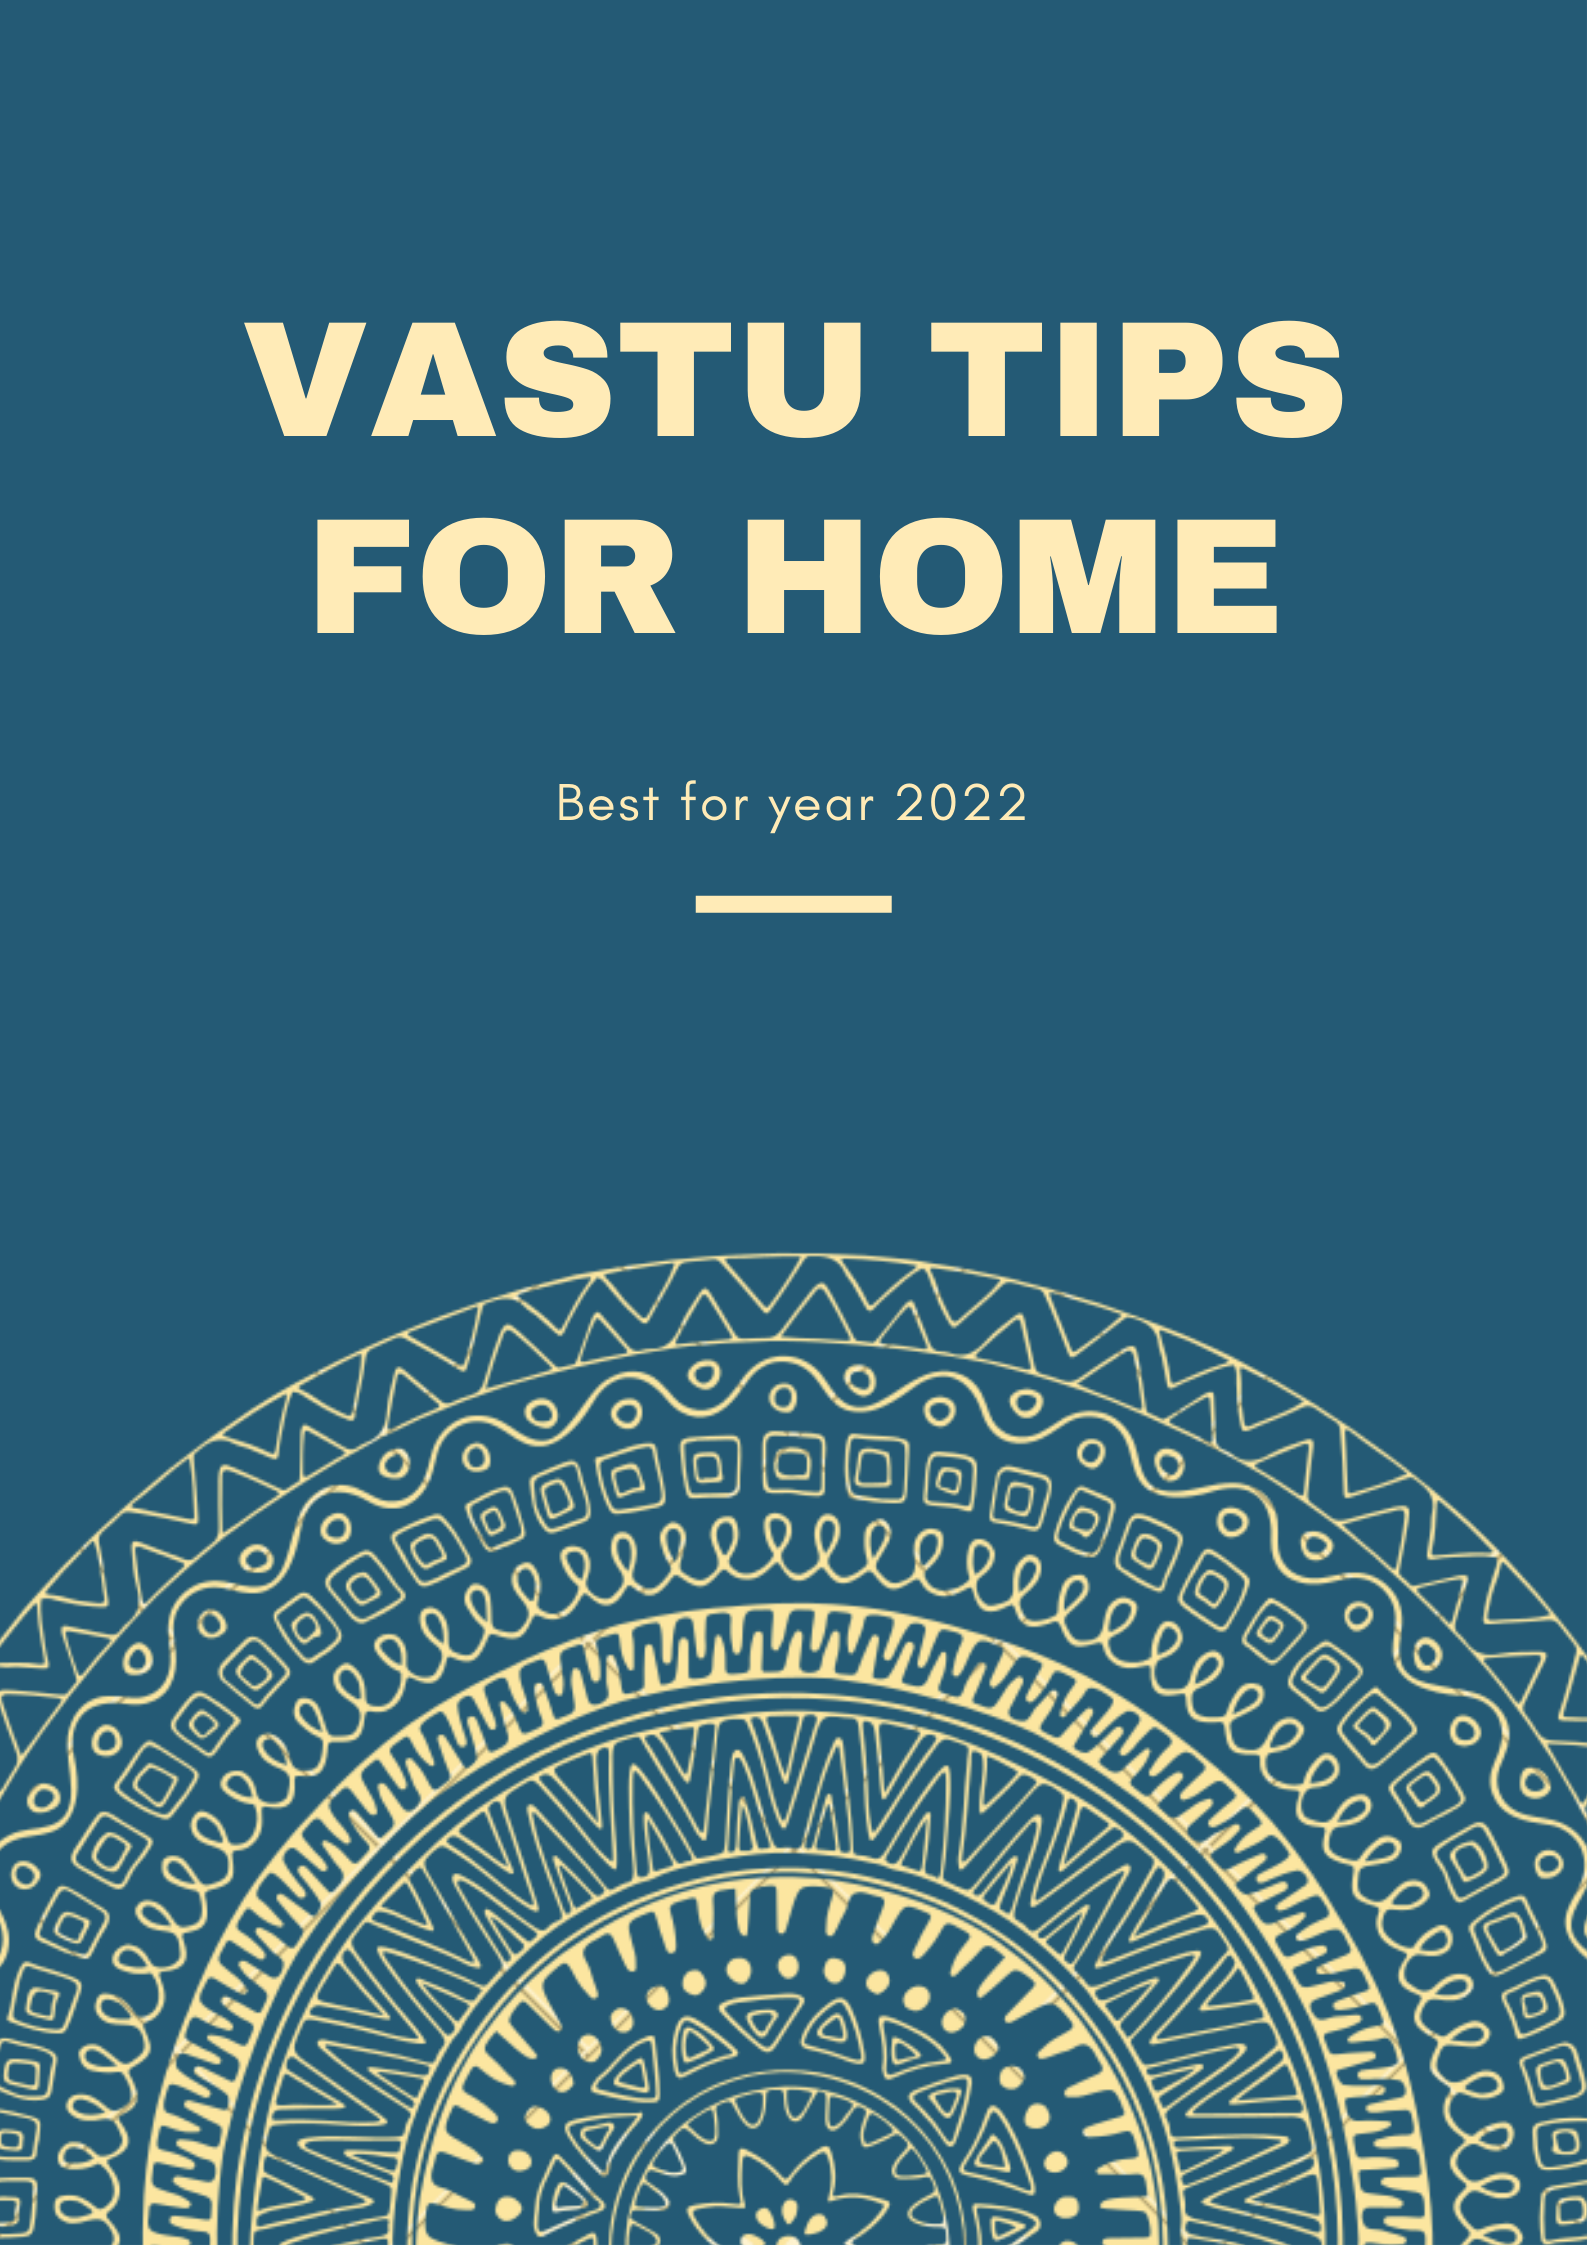 Vastu tips for home